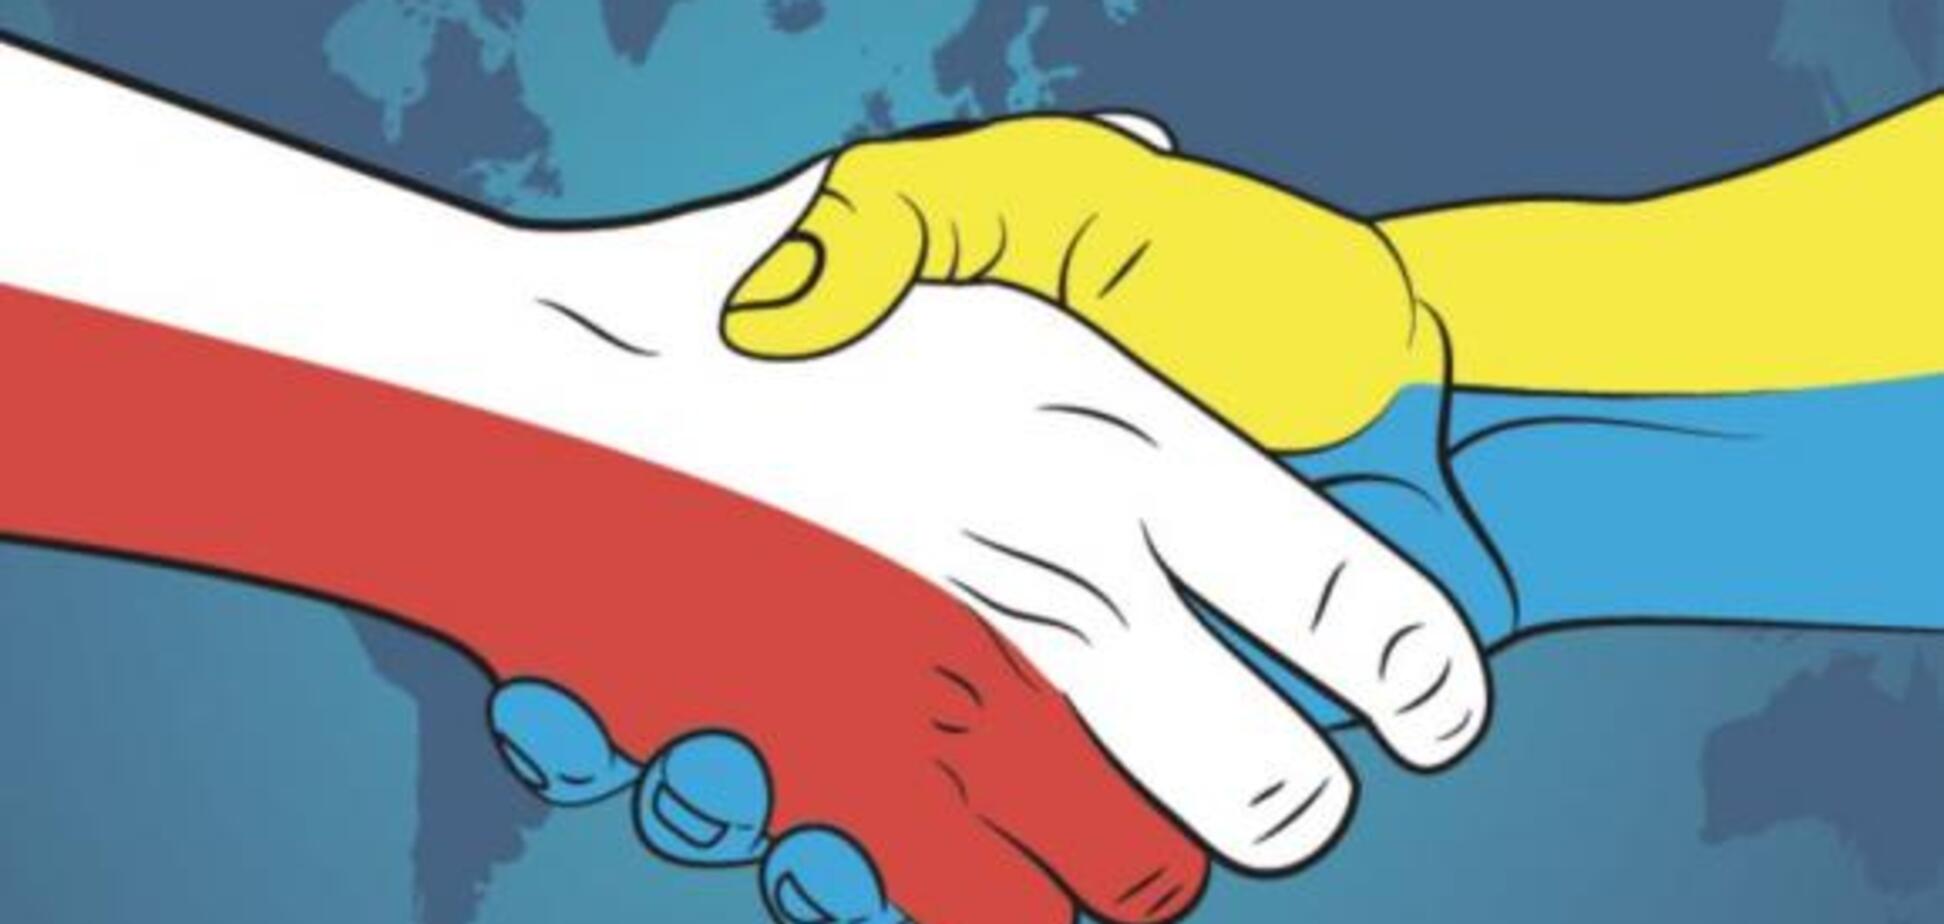 Польша выяснит, как спецслужбы РФ сталкивают ее с Украиной